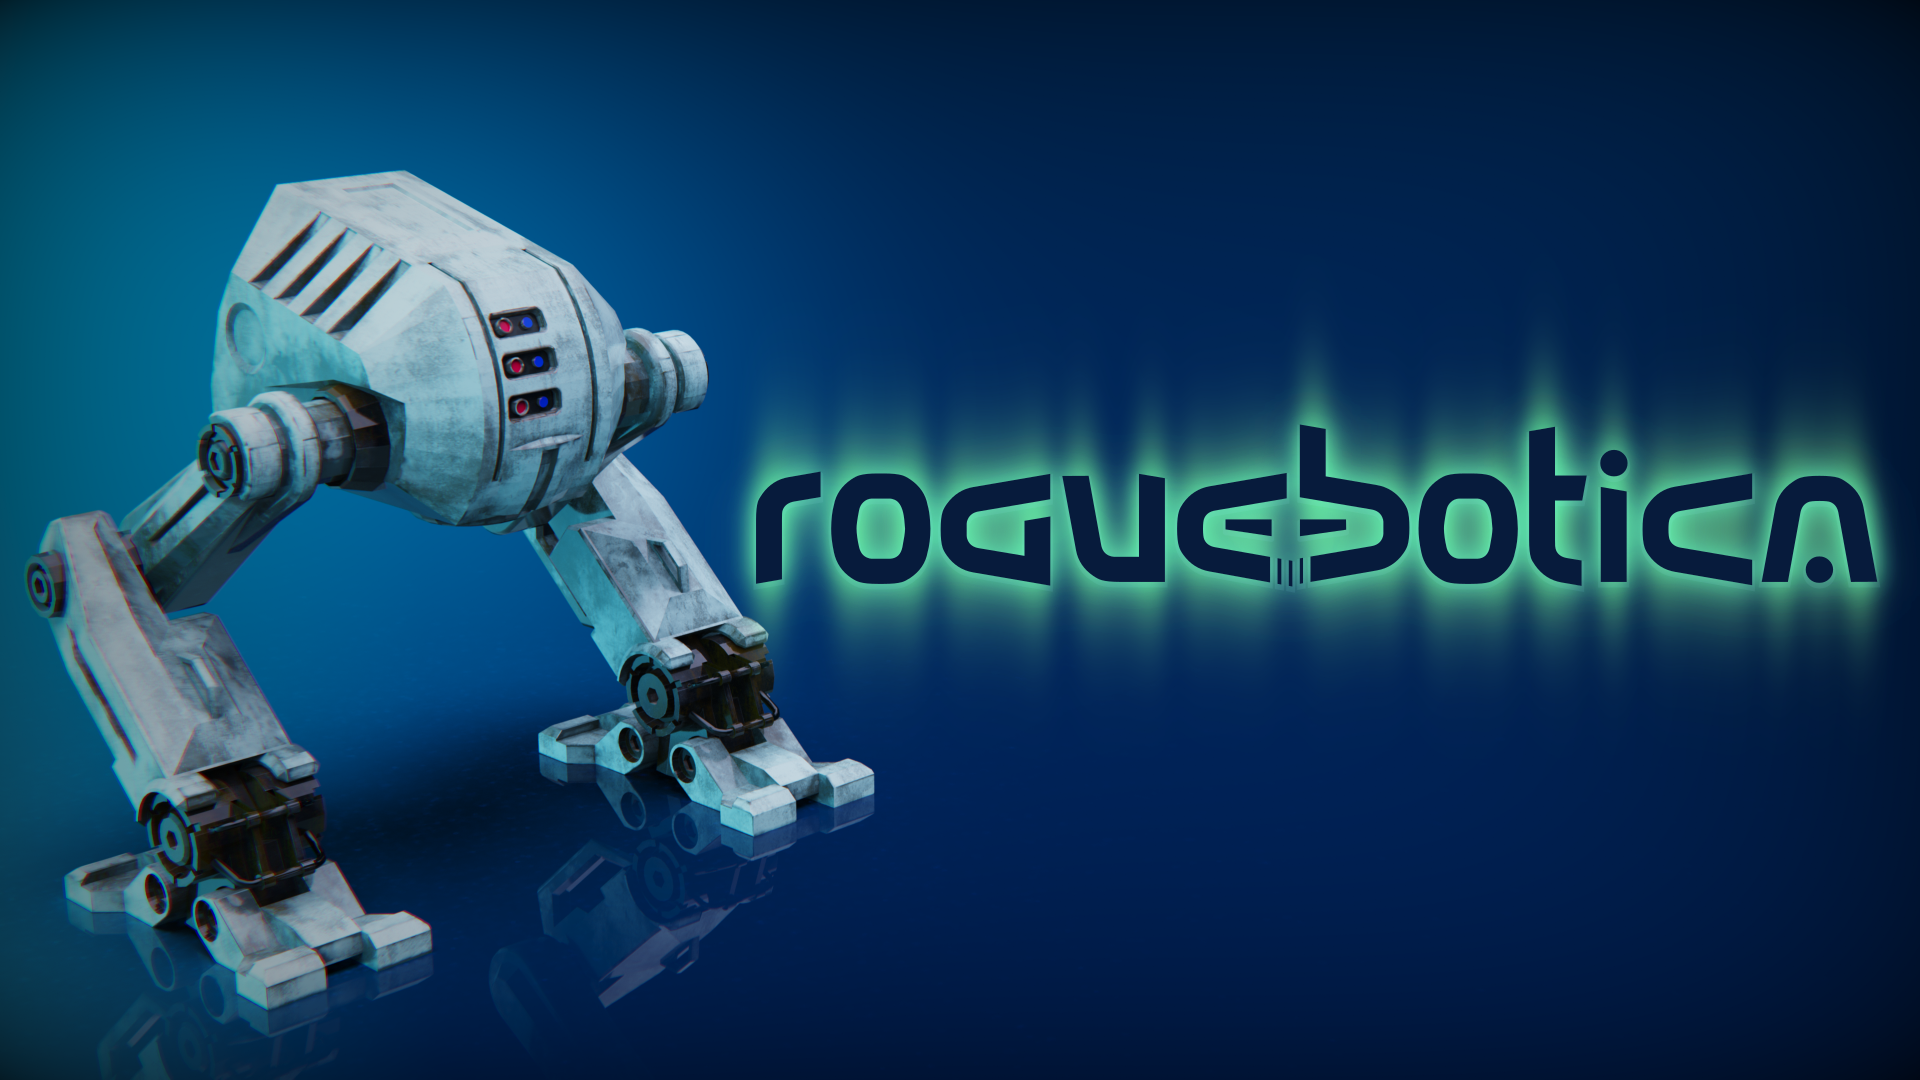 Roguebotica